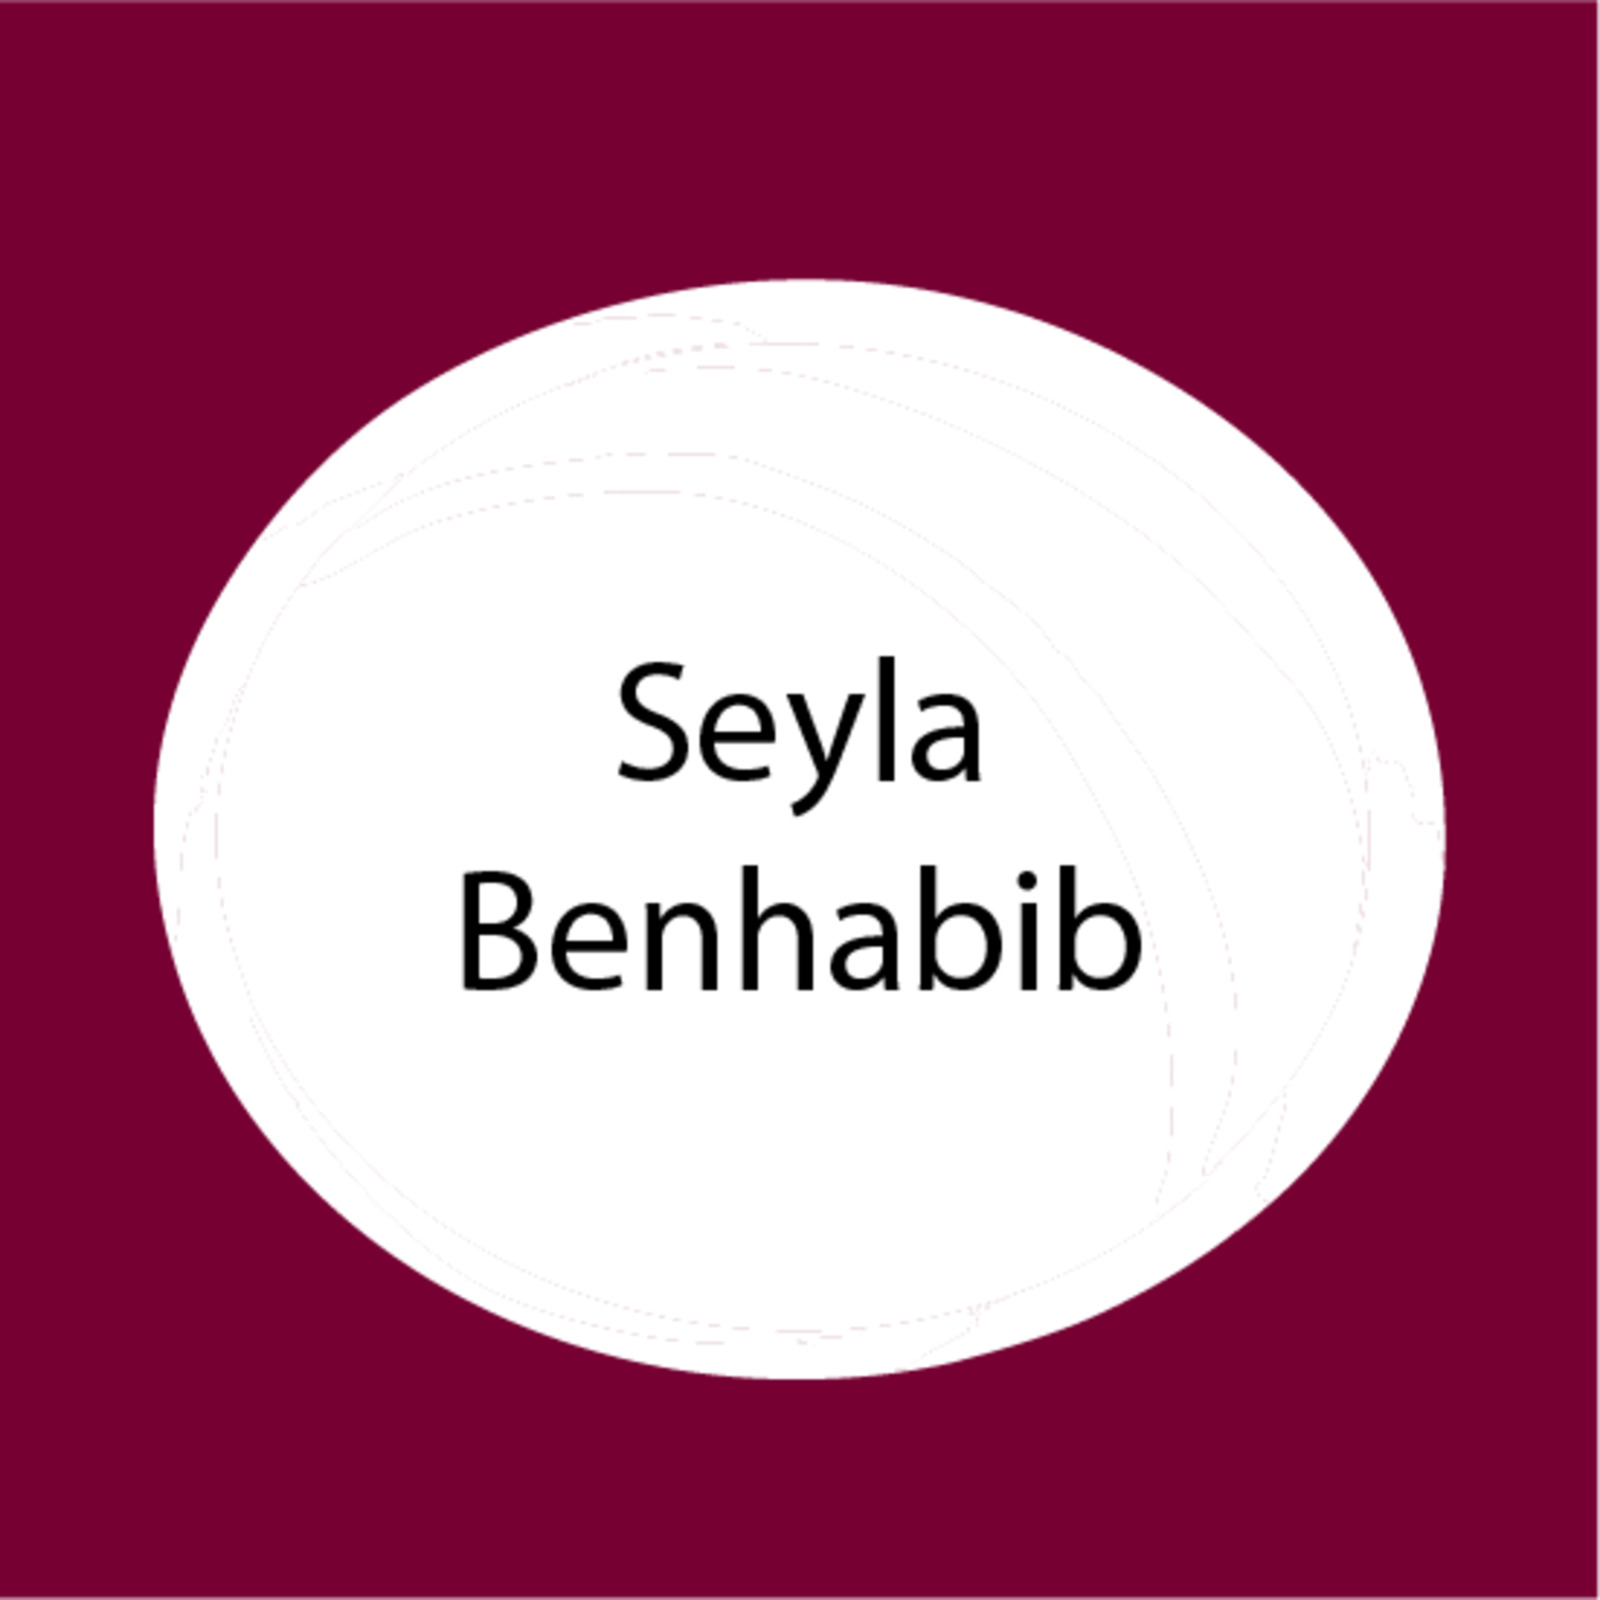 Seyla Benhabib